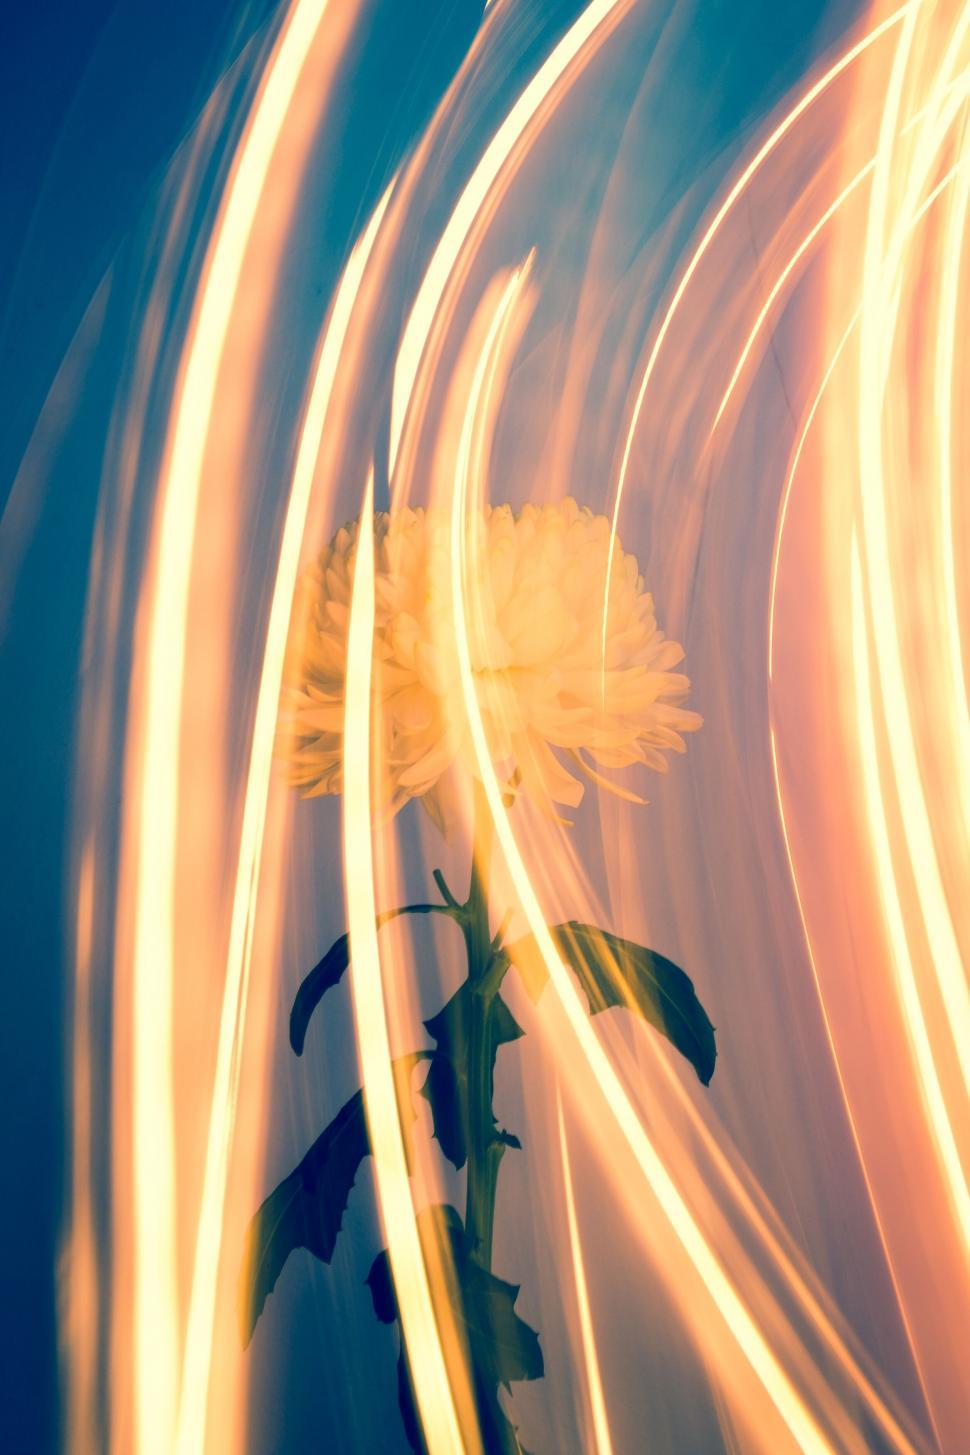 Free Image of Vibrant flower enveloped by light streaks 